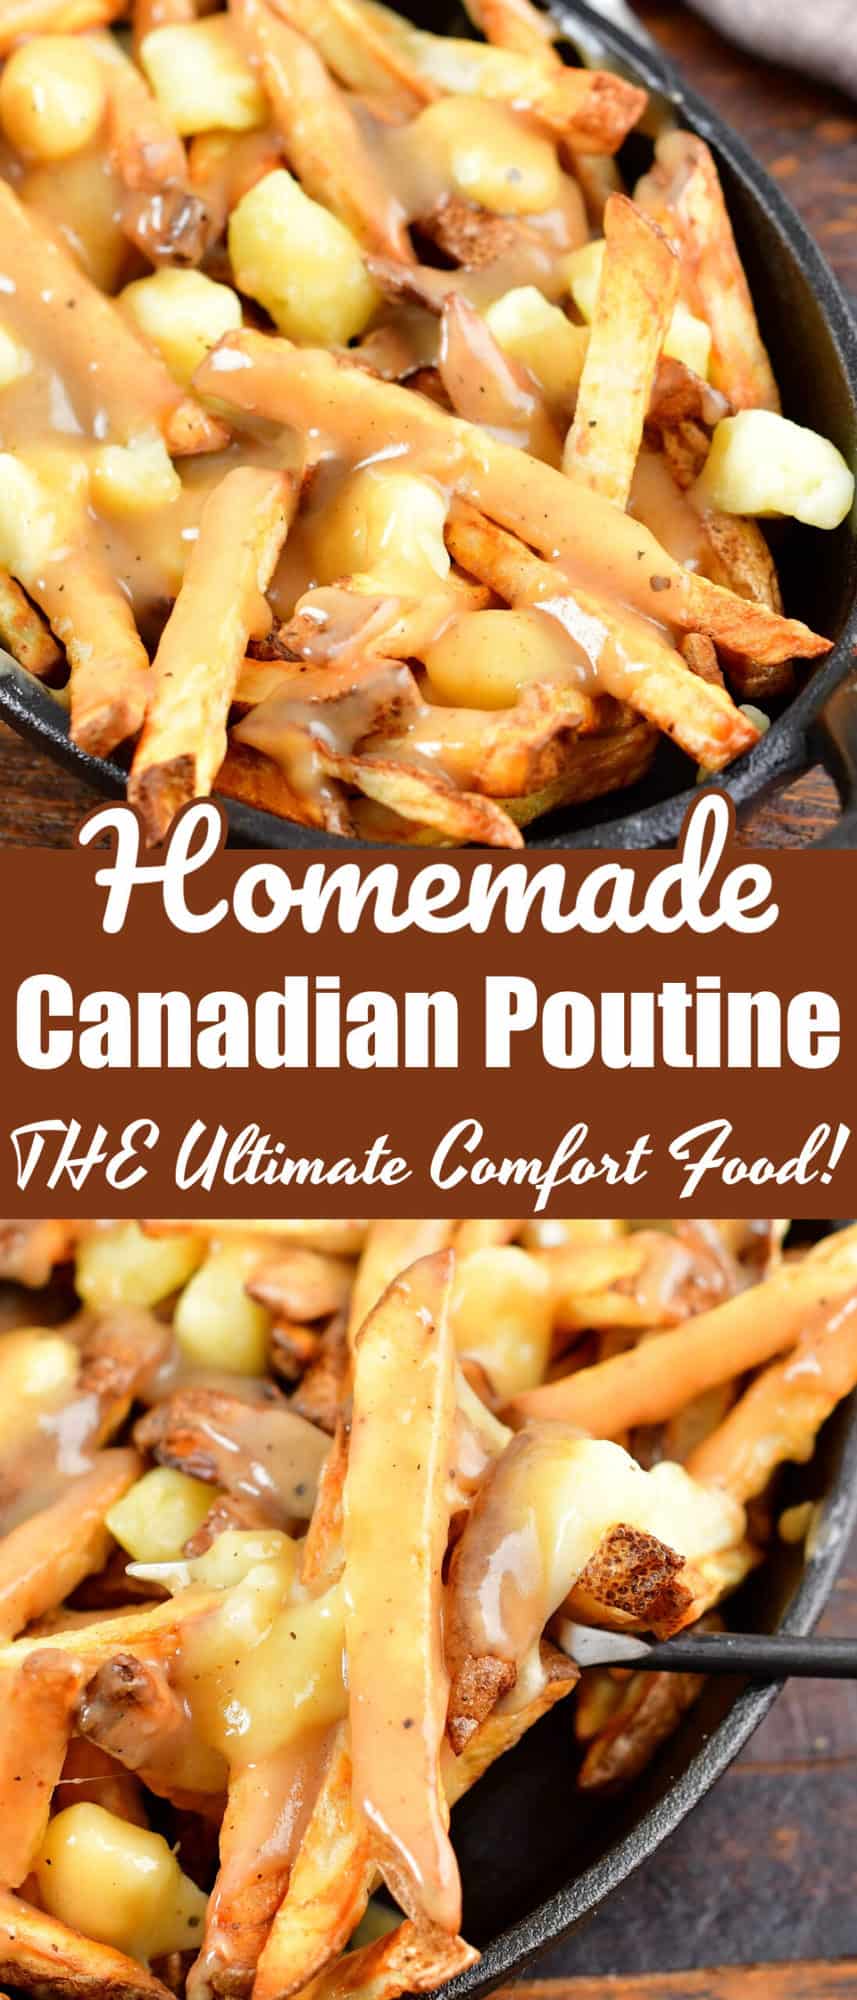 Cheddar fries, Healthy Recipes, WW Canada, Recipe